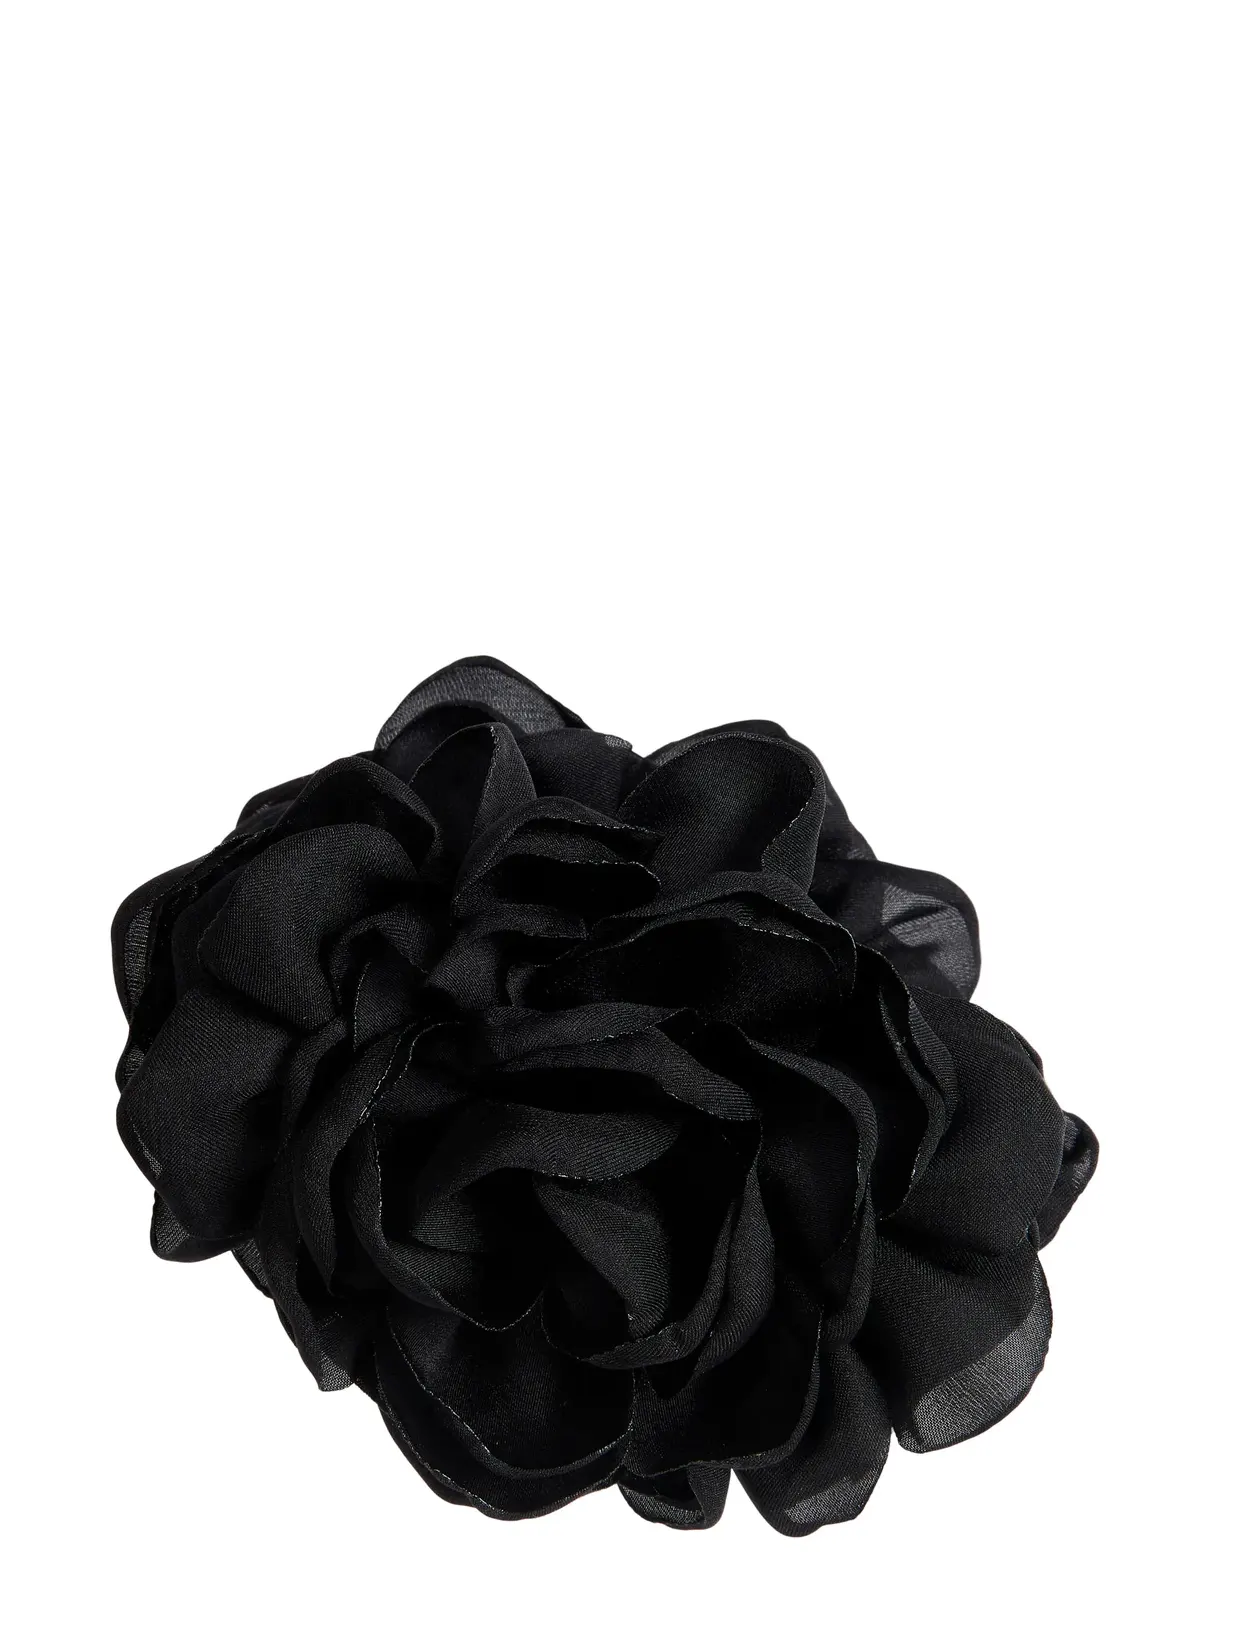 Flower claw, black